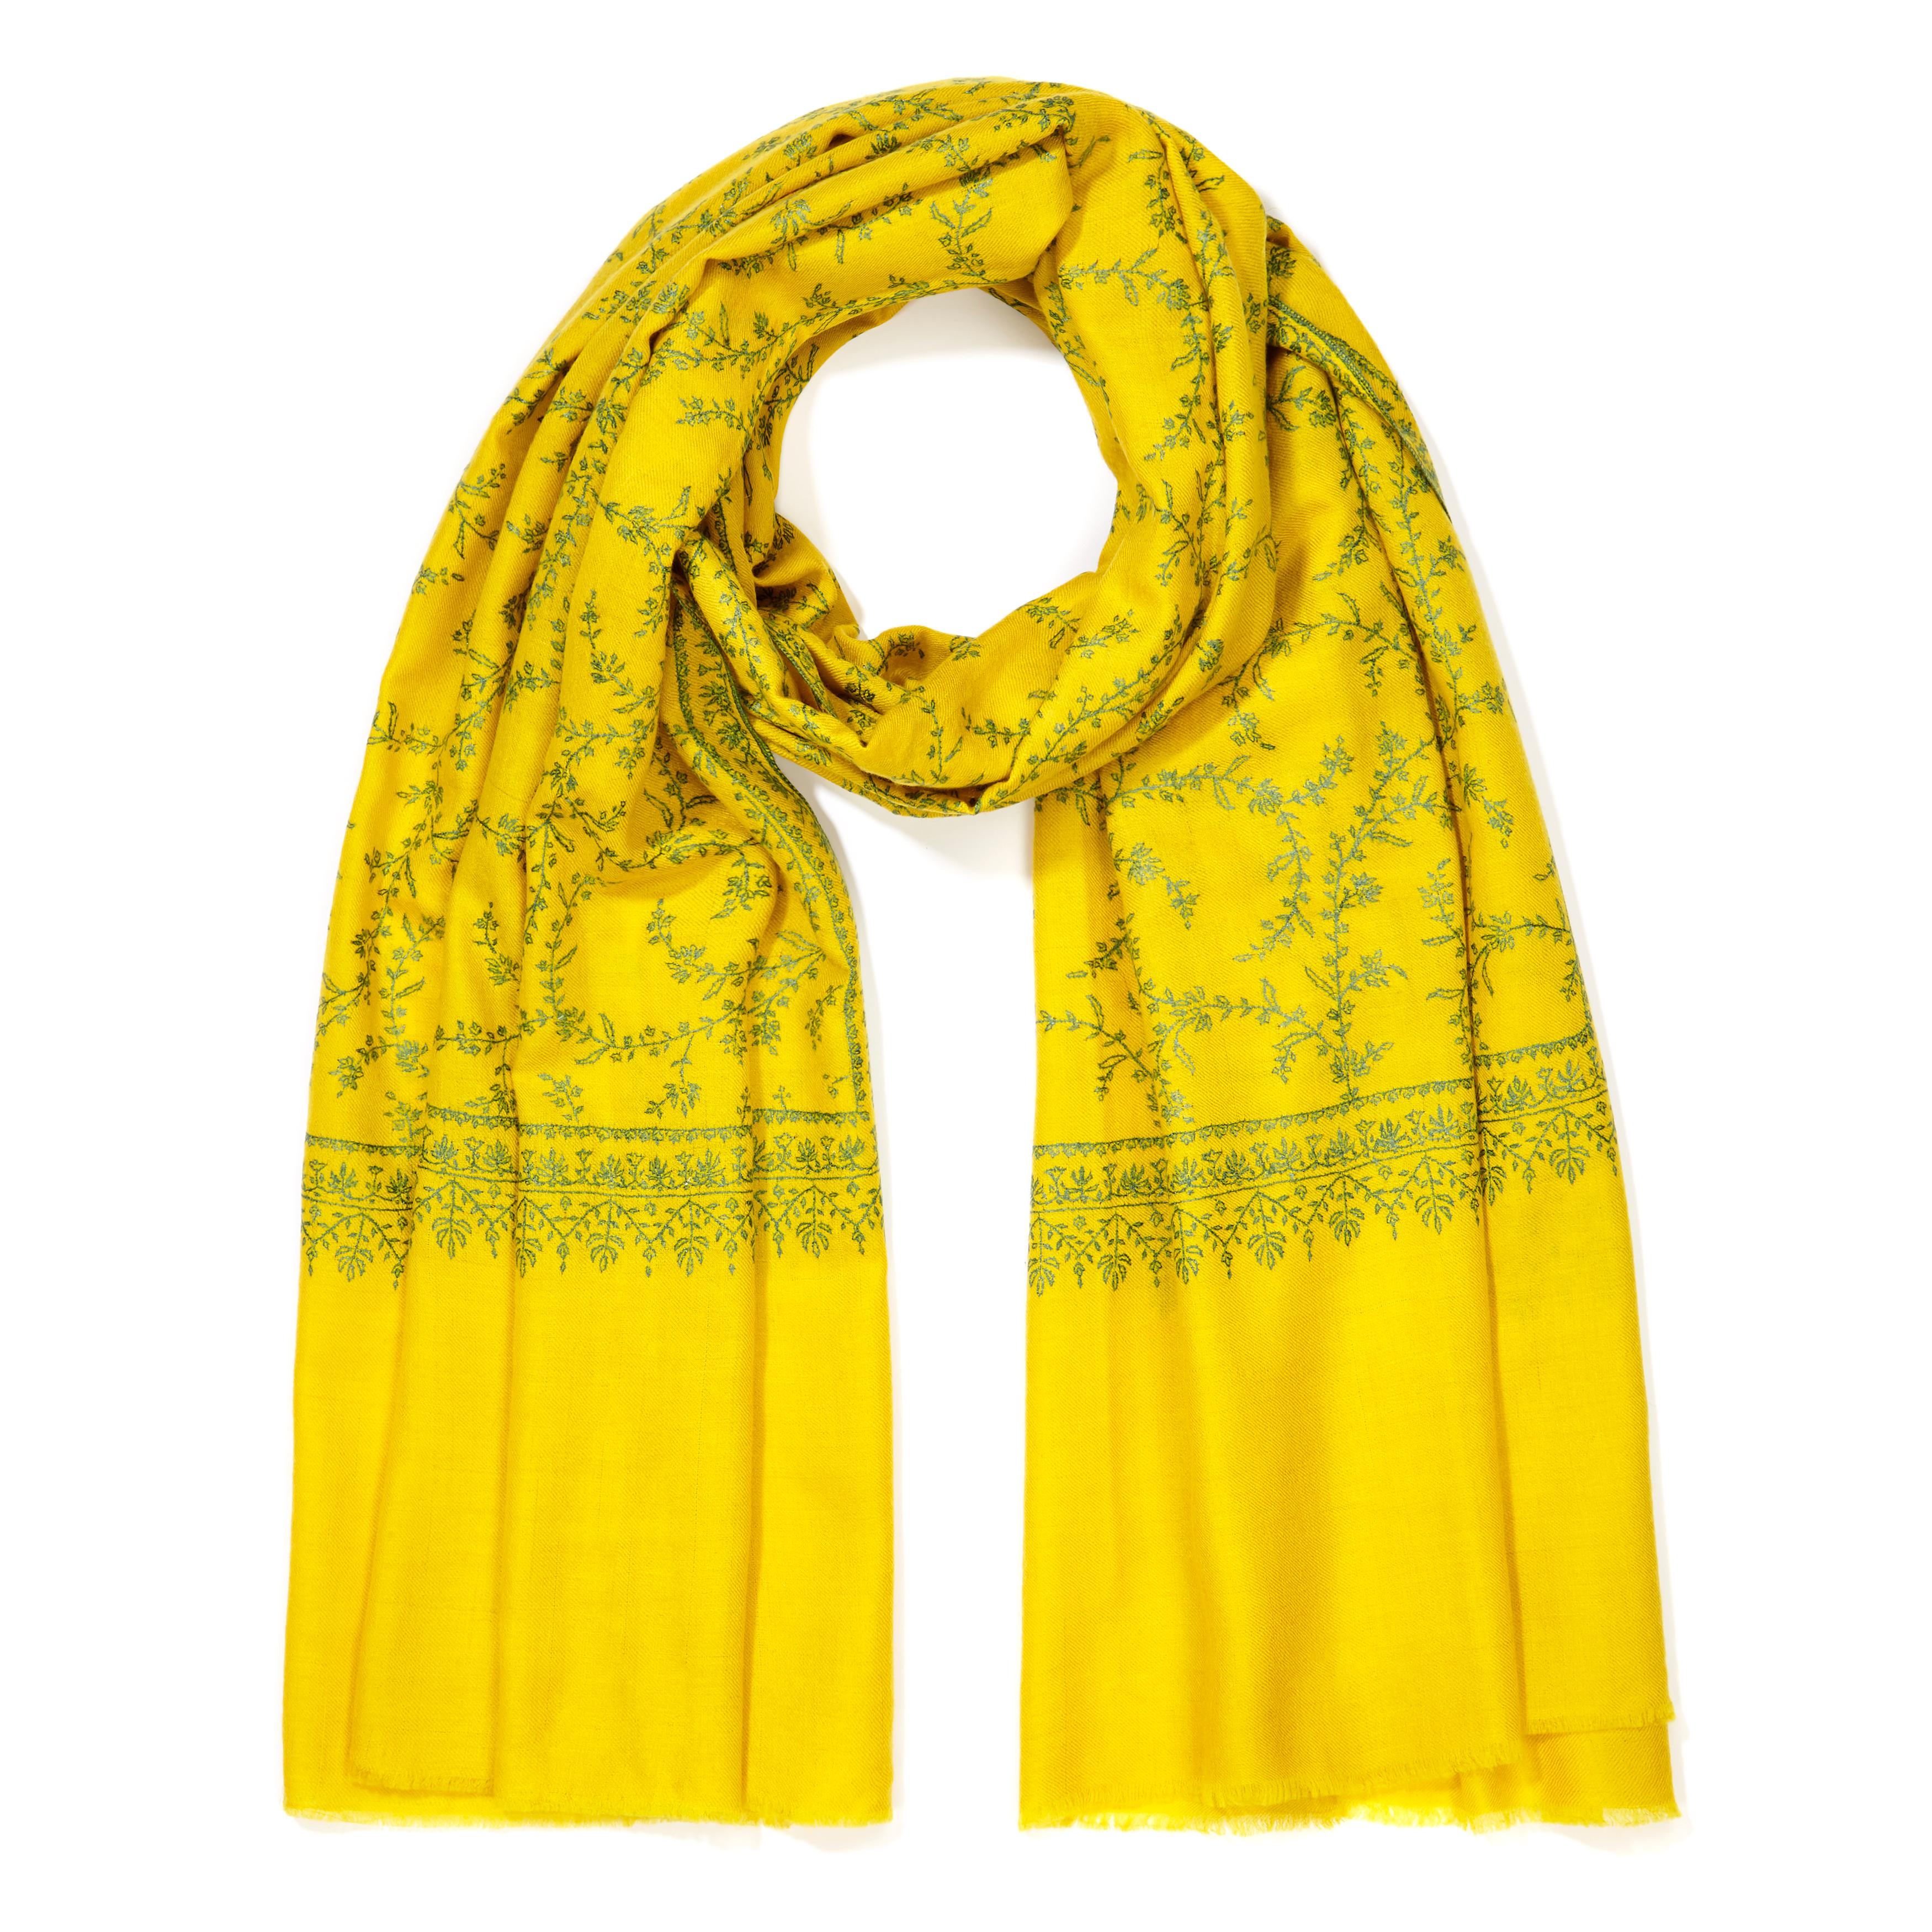 Handbestickter Schal aus 100% Kaschmir in Gelb Made in Kashmir Indien  für Damen oder Herren im Angebot